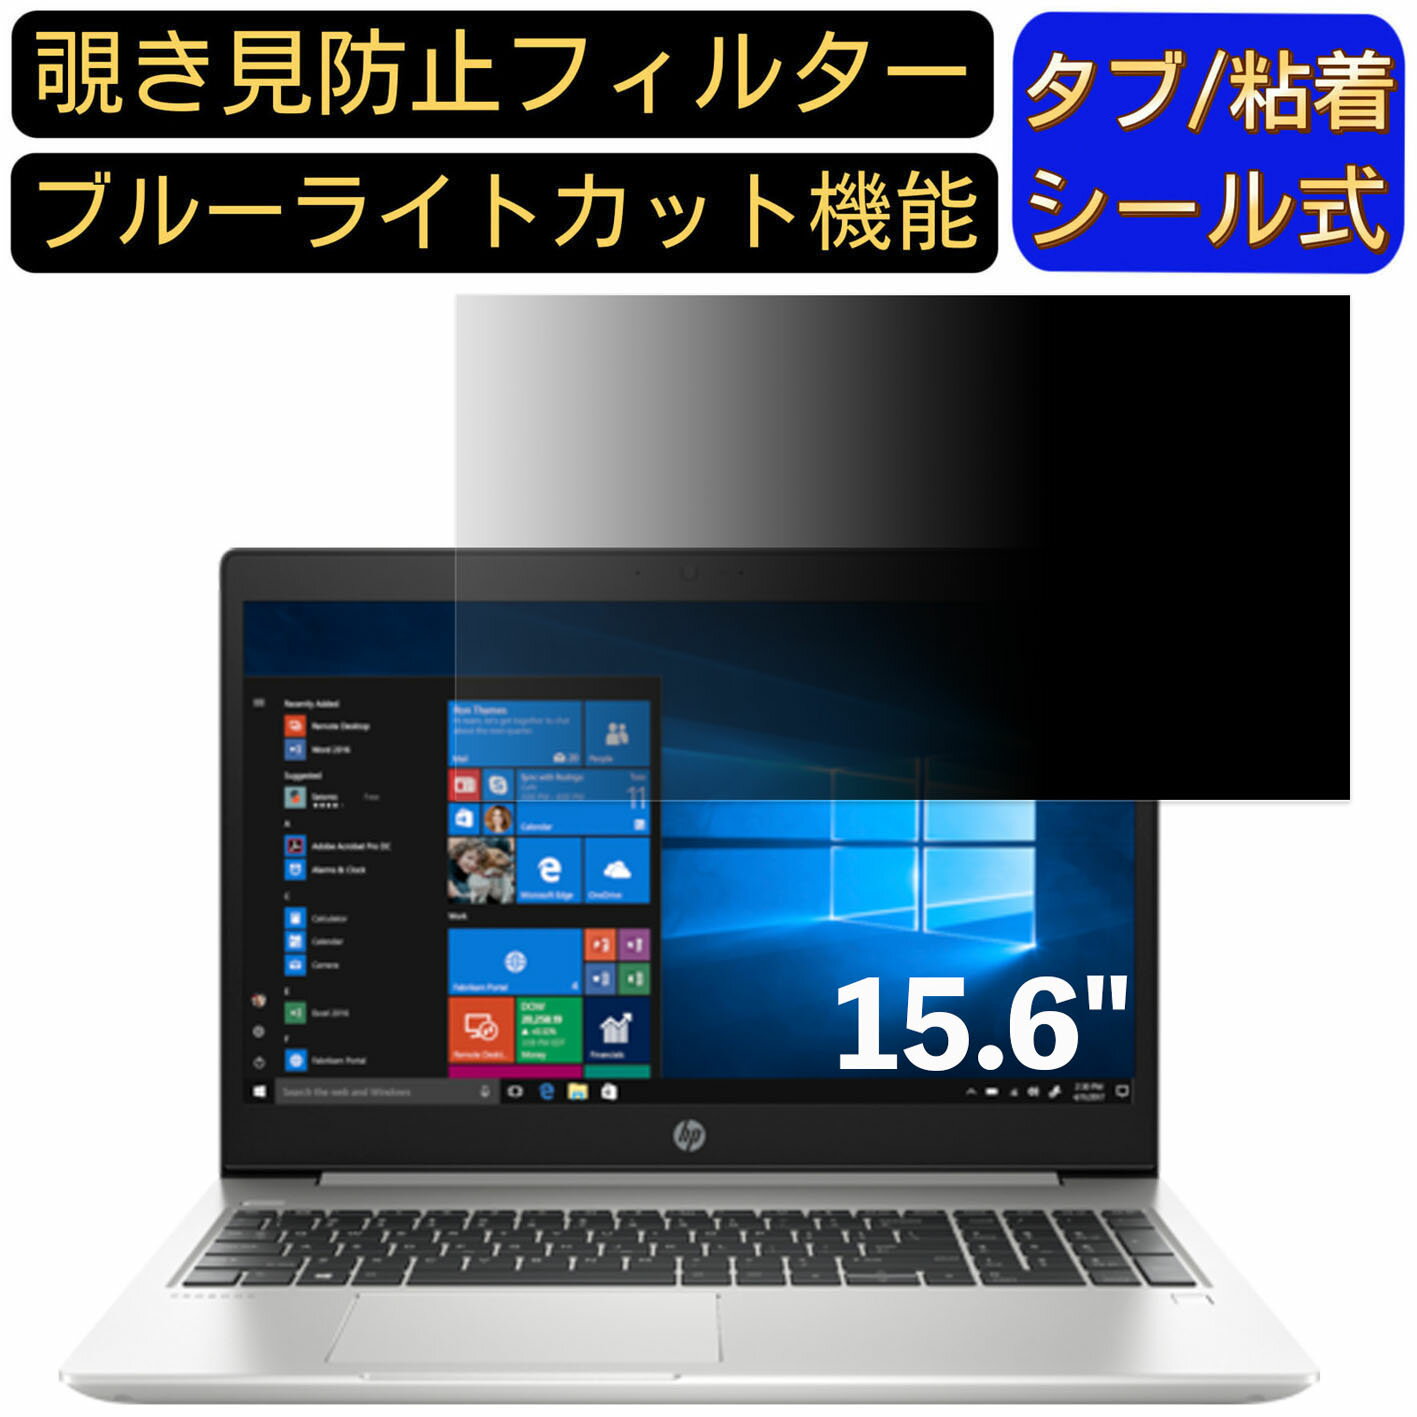 【ポイント2倍】HP ProBook 450 G6/CT Notebook 15.6インチ 16:9 対応 のぞき見防止 フィルター プライ..